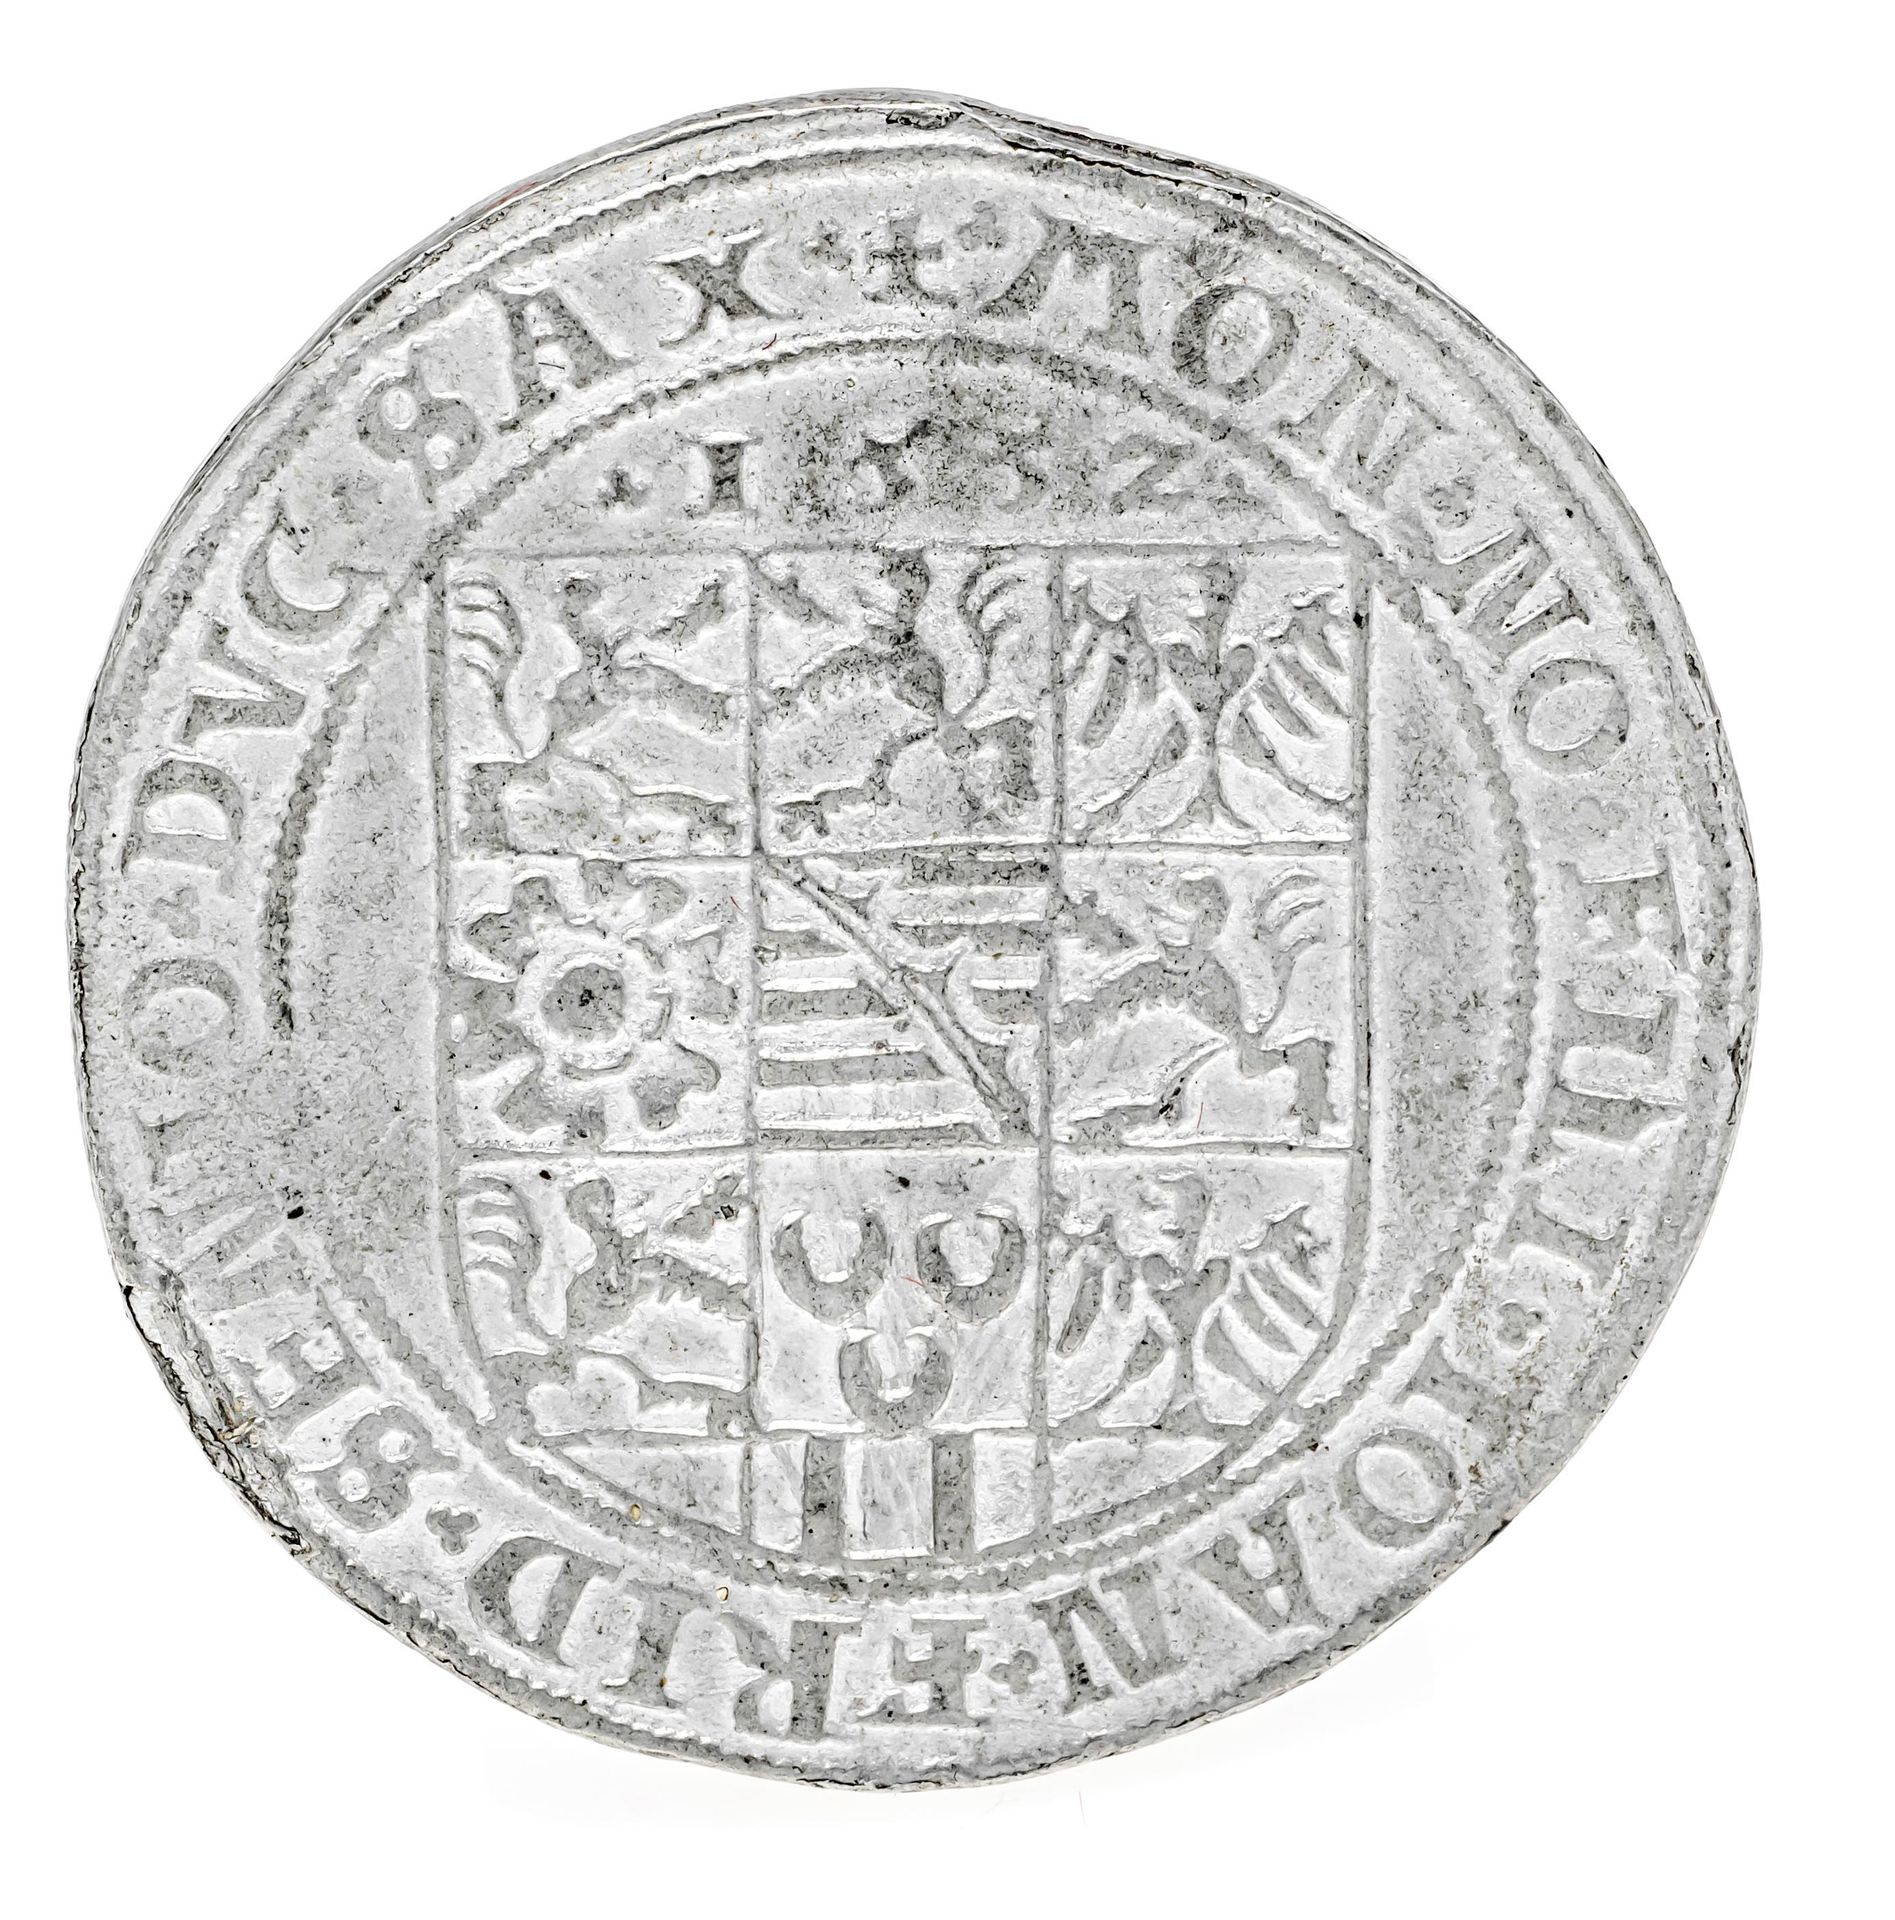 Null 
硬币，塔勒，萨克森州，日期为1552年，26,36克，包装纸上有旧的刻字和解释 - 没有银。可能是历史上的收藏品。